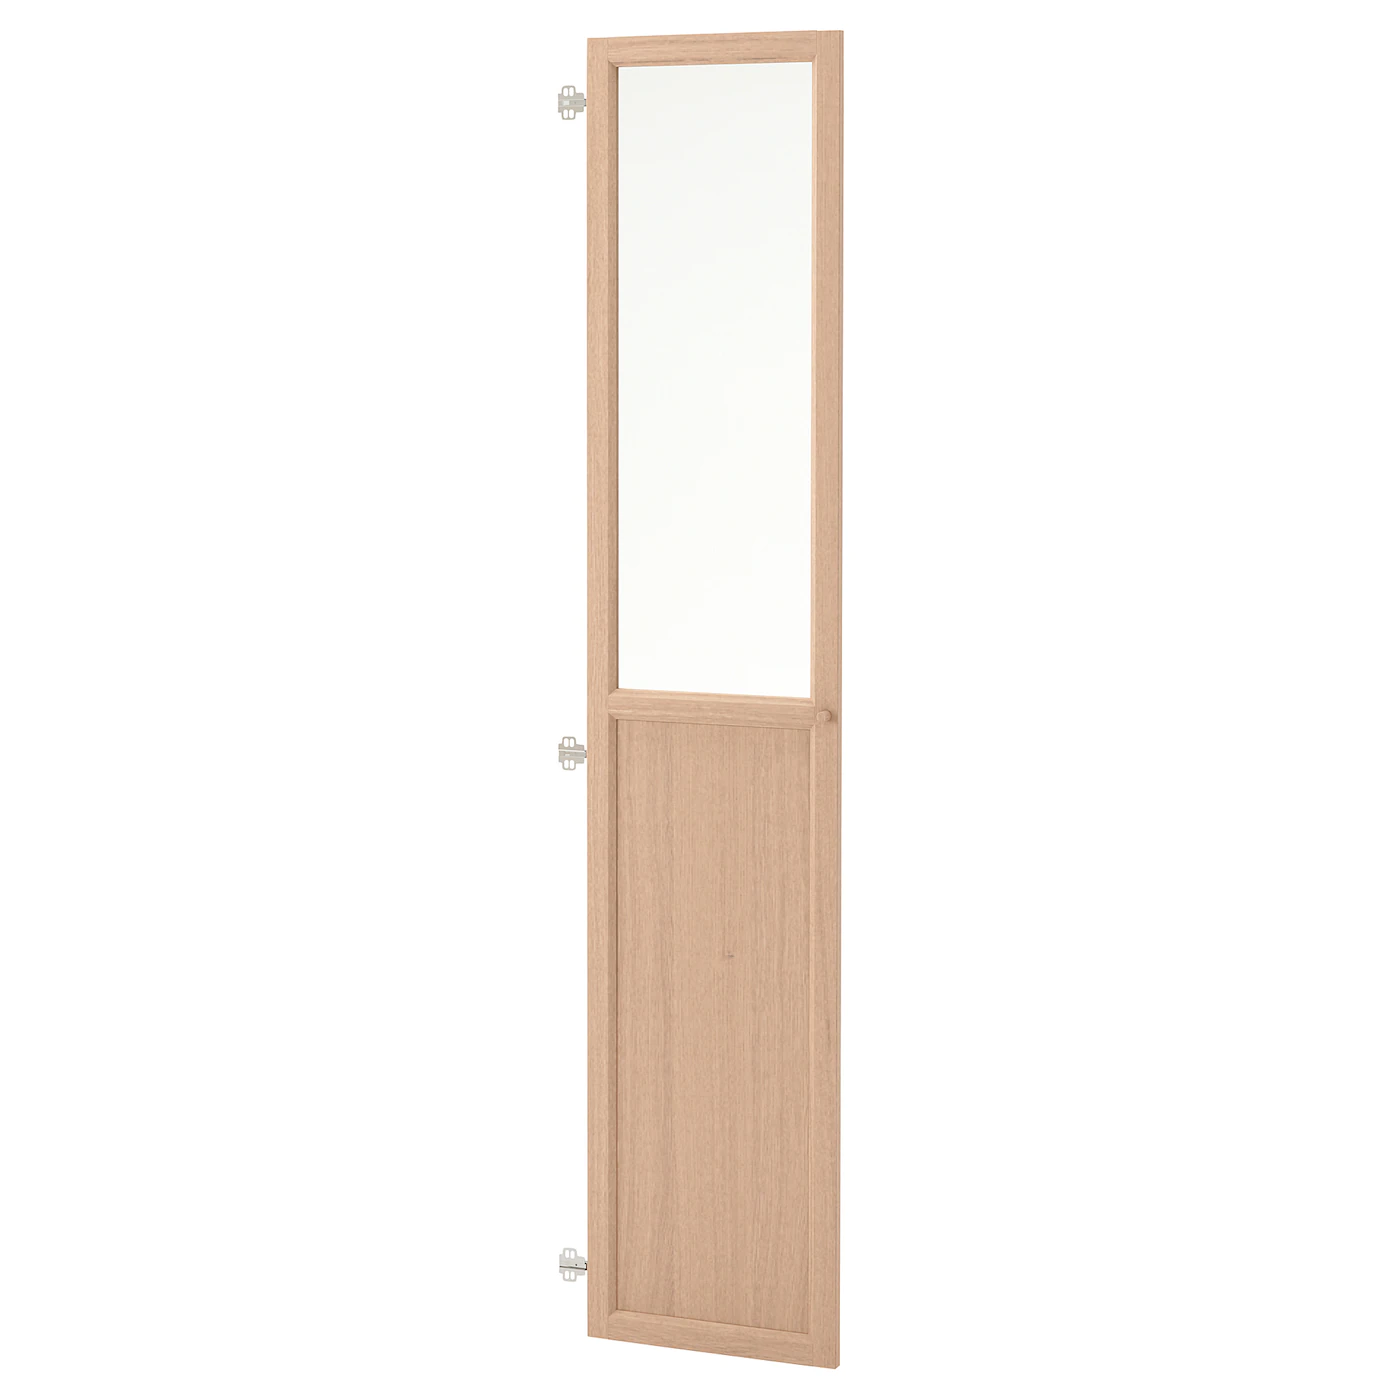 oxberg-puerta-vidrio-chapa-roble-tinte-blanco_0564836_pe664205_s5.jpg